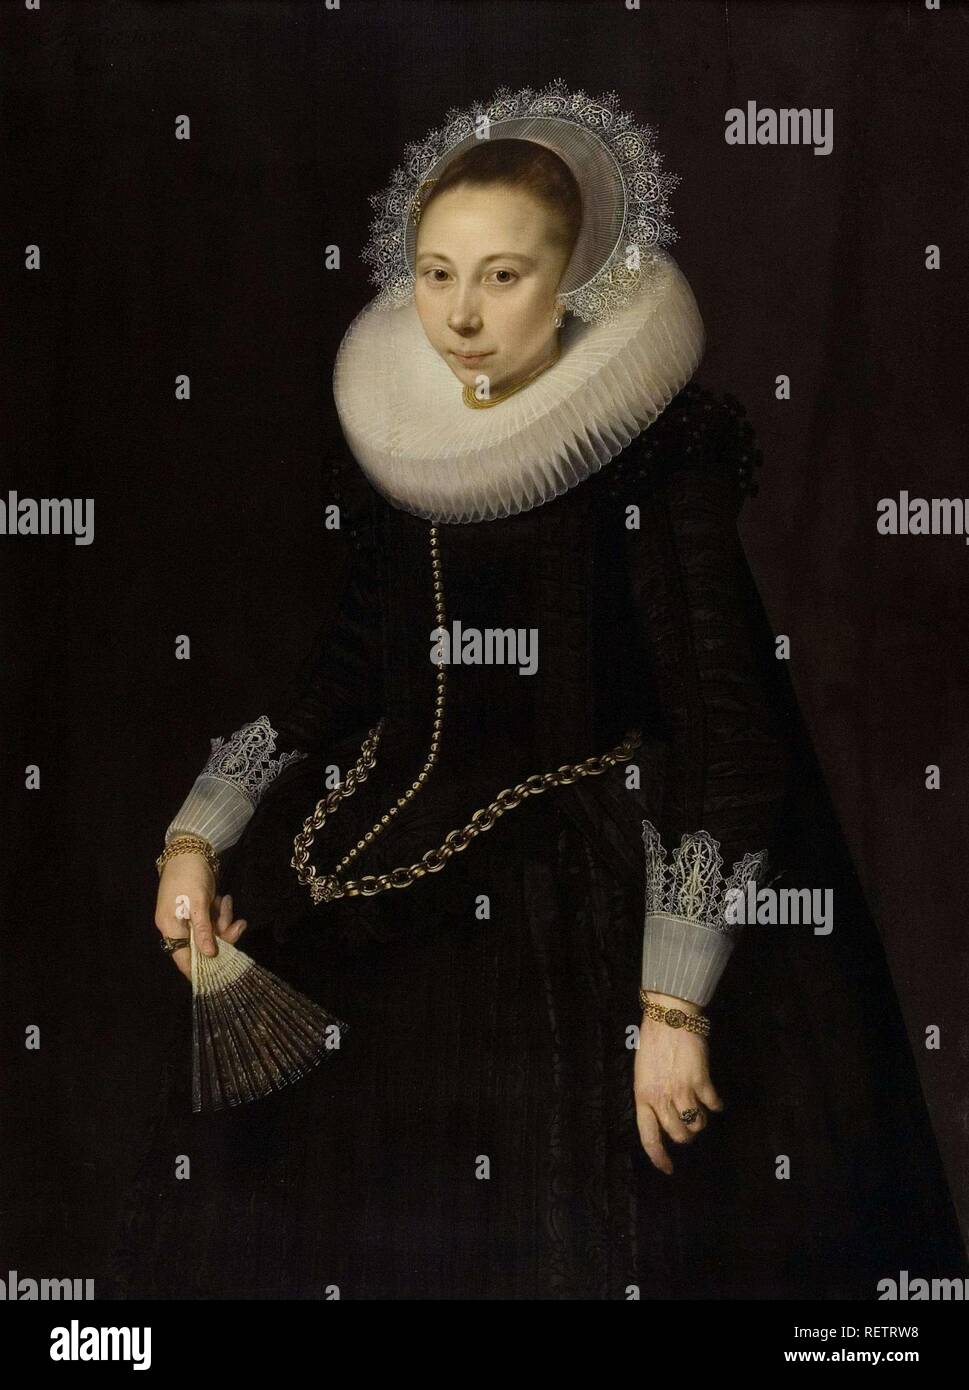 Portrait de Maria van Overrijn Schoterbosch (1599/1600-1638). Dating : 1622. Mesures : support : h 122 cm × w 90,6 cm ; cadre : h 134 cm × w 102,8 cm × t 5 cm ; taille de la vue : h 119,7 cm × w 88,8 cm. Musée : Rijksmuseum, Amsterdam. Auteur : Cornelis van der Voort. Banque D'Images